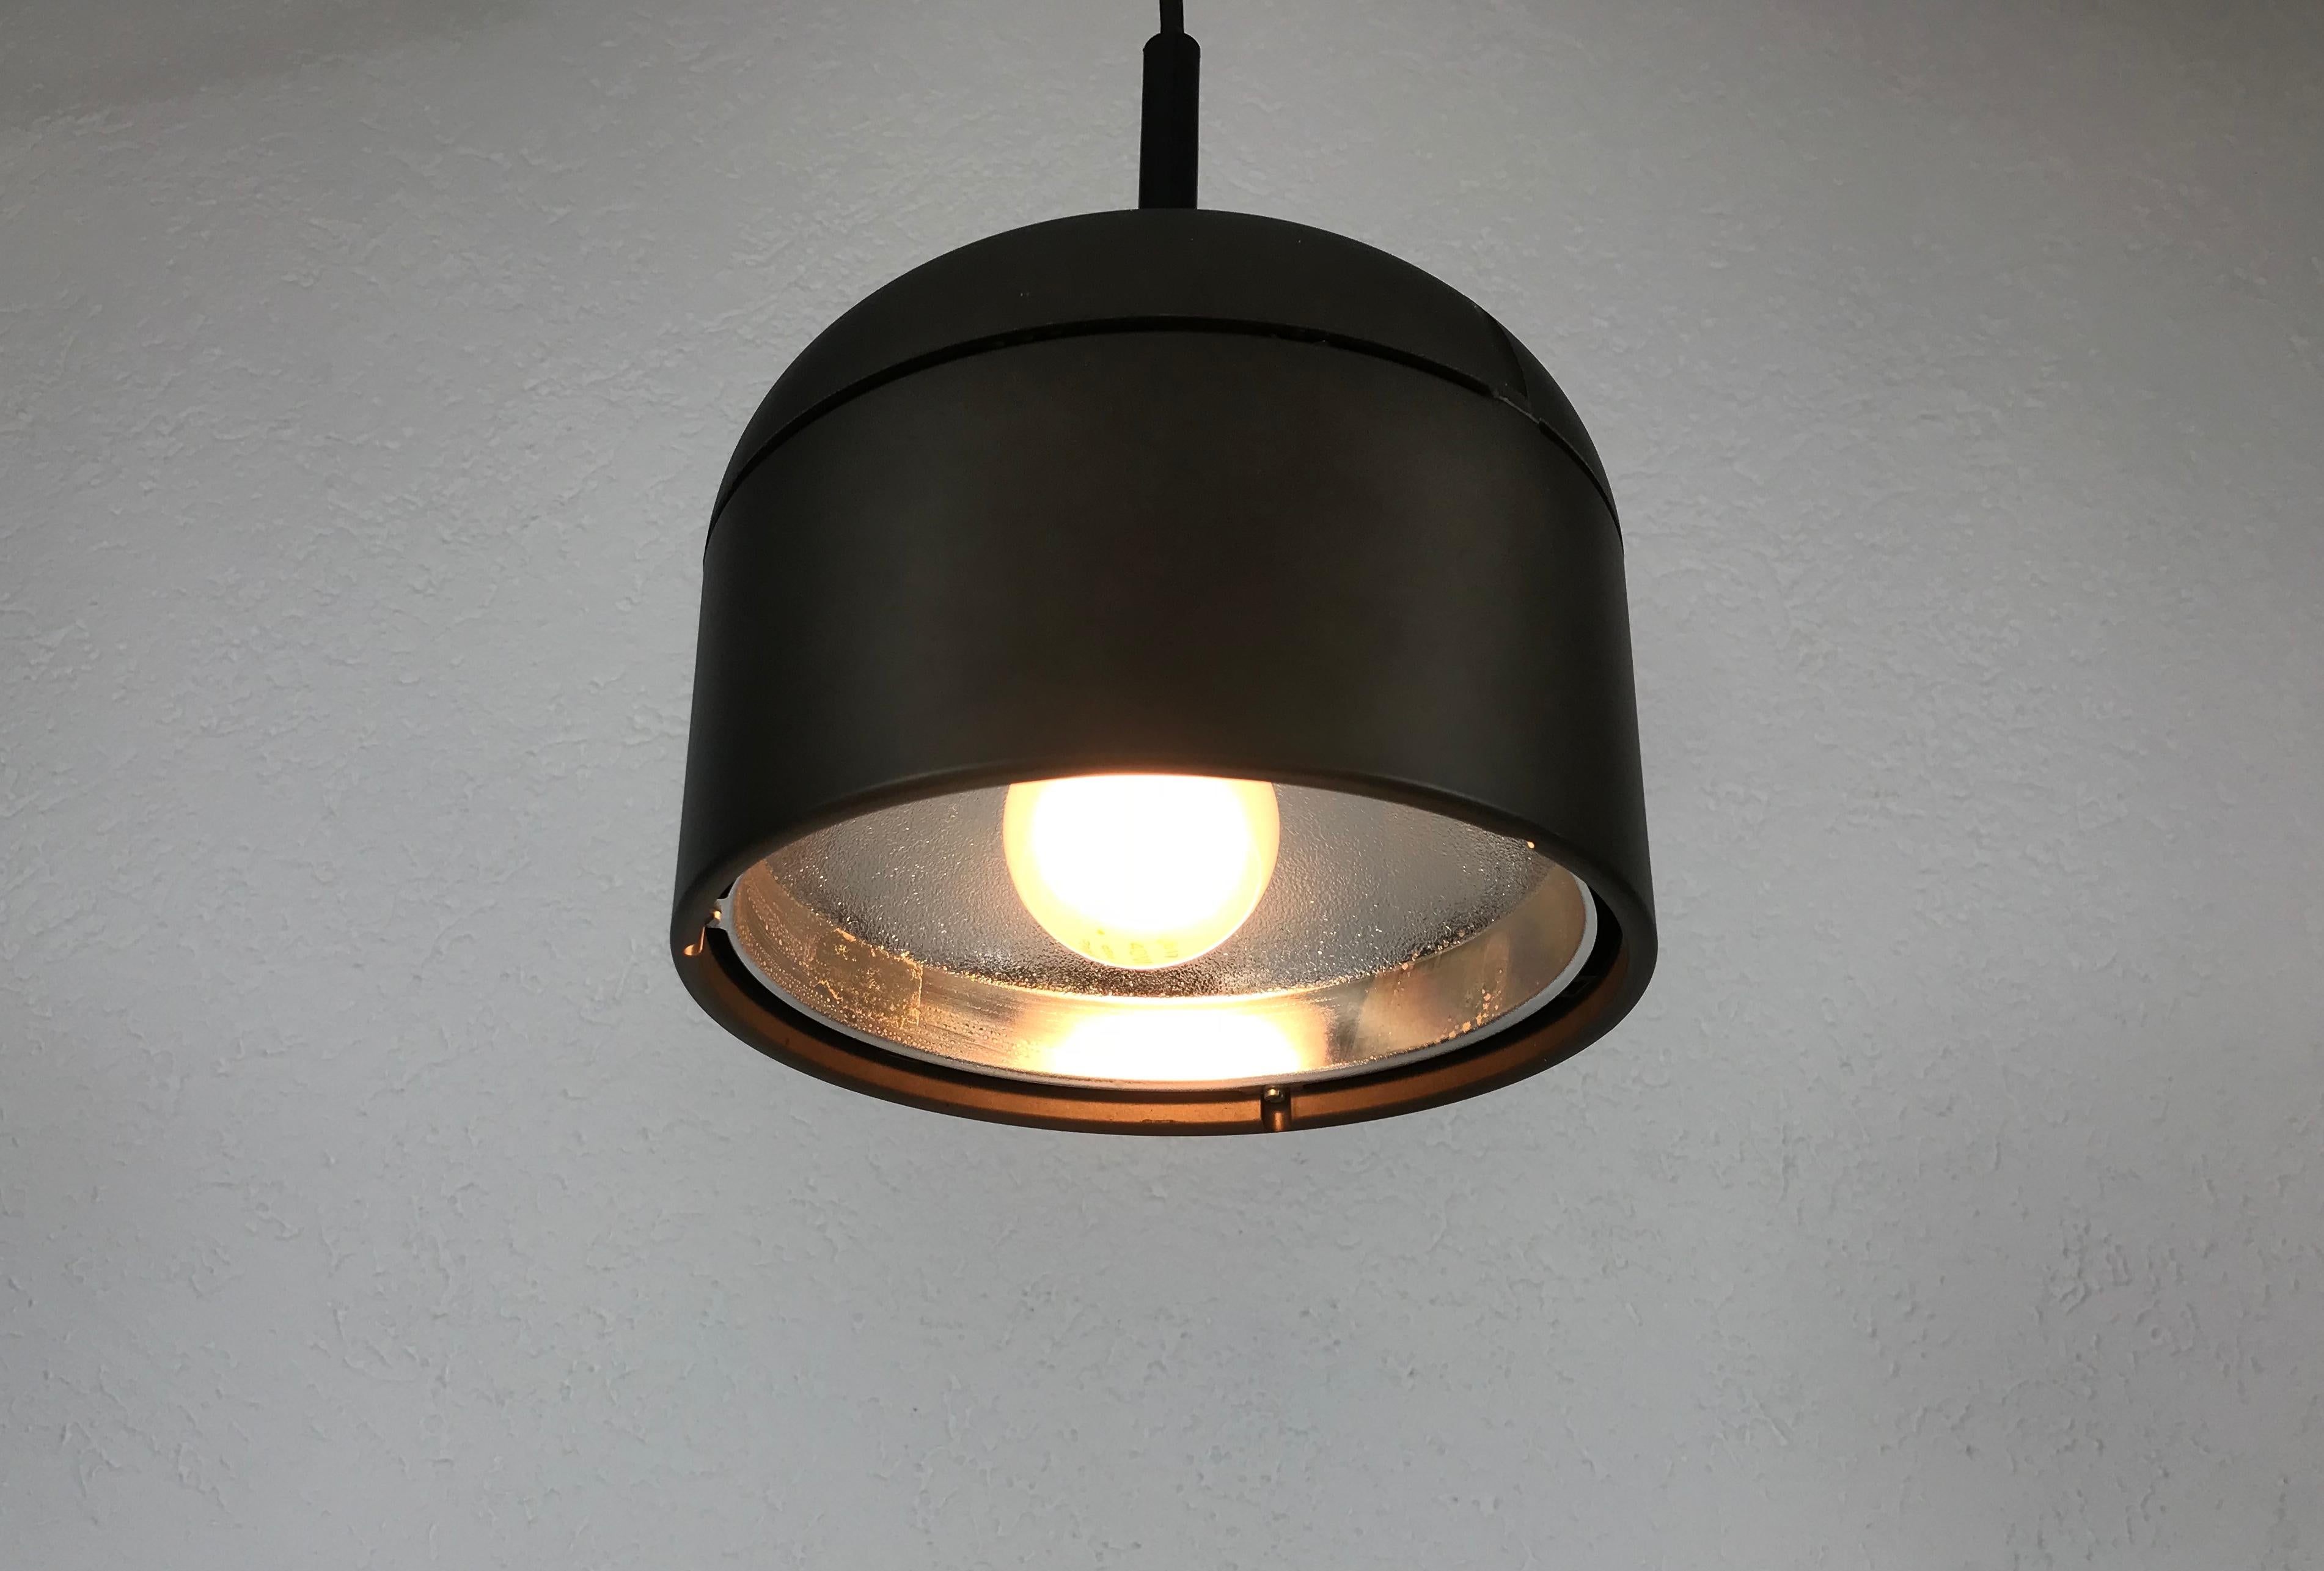 Lampe à suspension marron Staff fabriquée en Allemagne dans les années 1970. L'abat-jour brun est fabriqué en aluminium. 

Le luminaire nécessite une ampoule E27.

La hauteur est réglable jusqu'à 150 cm.